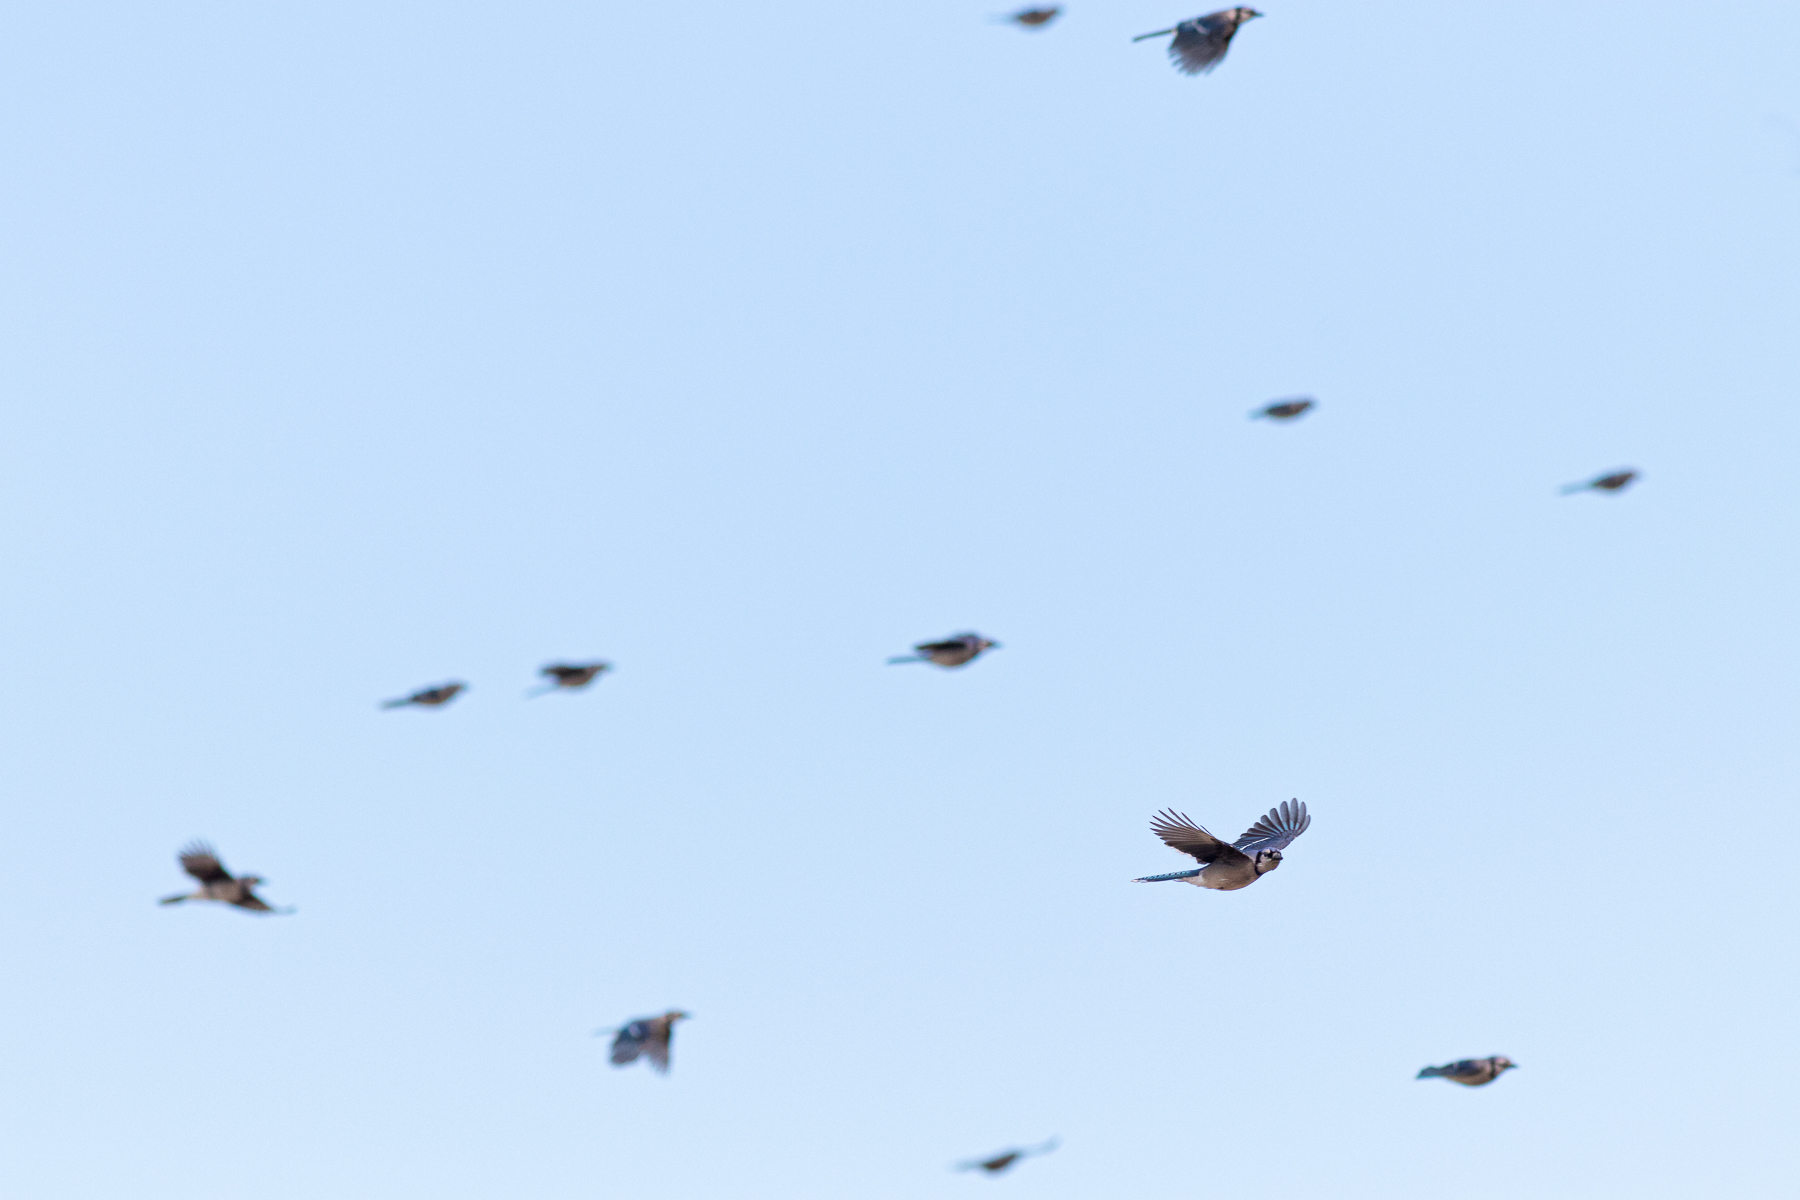 Blue Jay in Flight